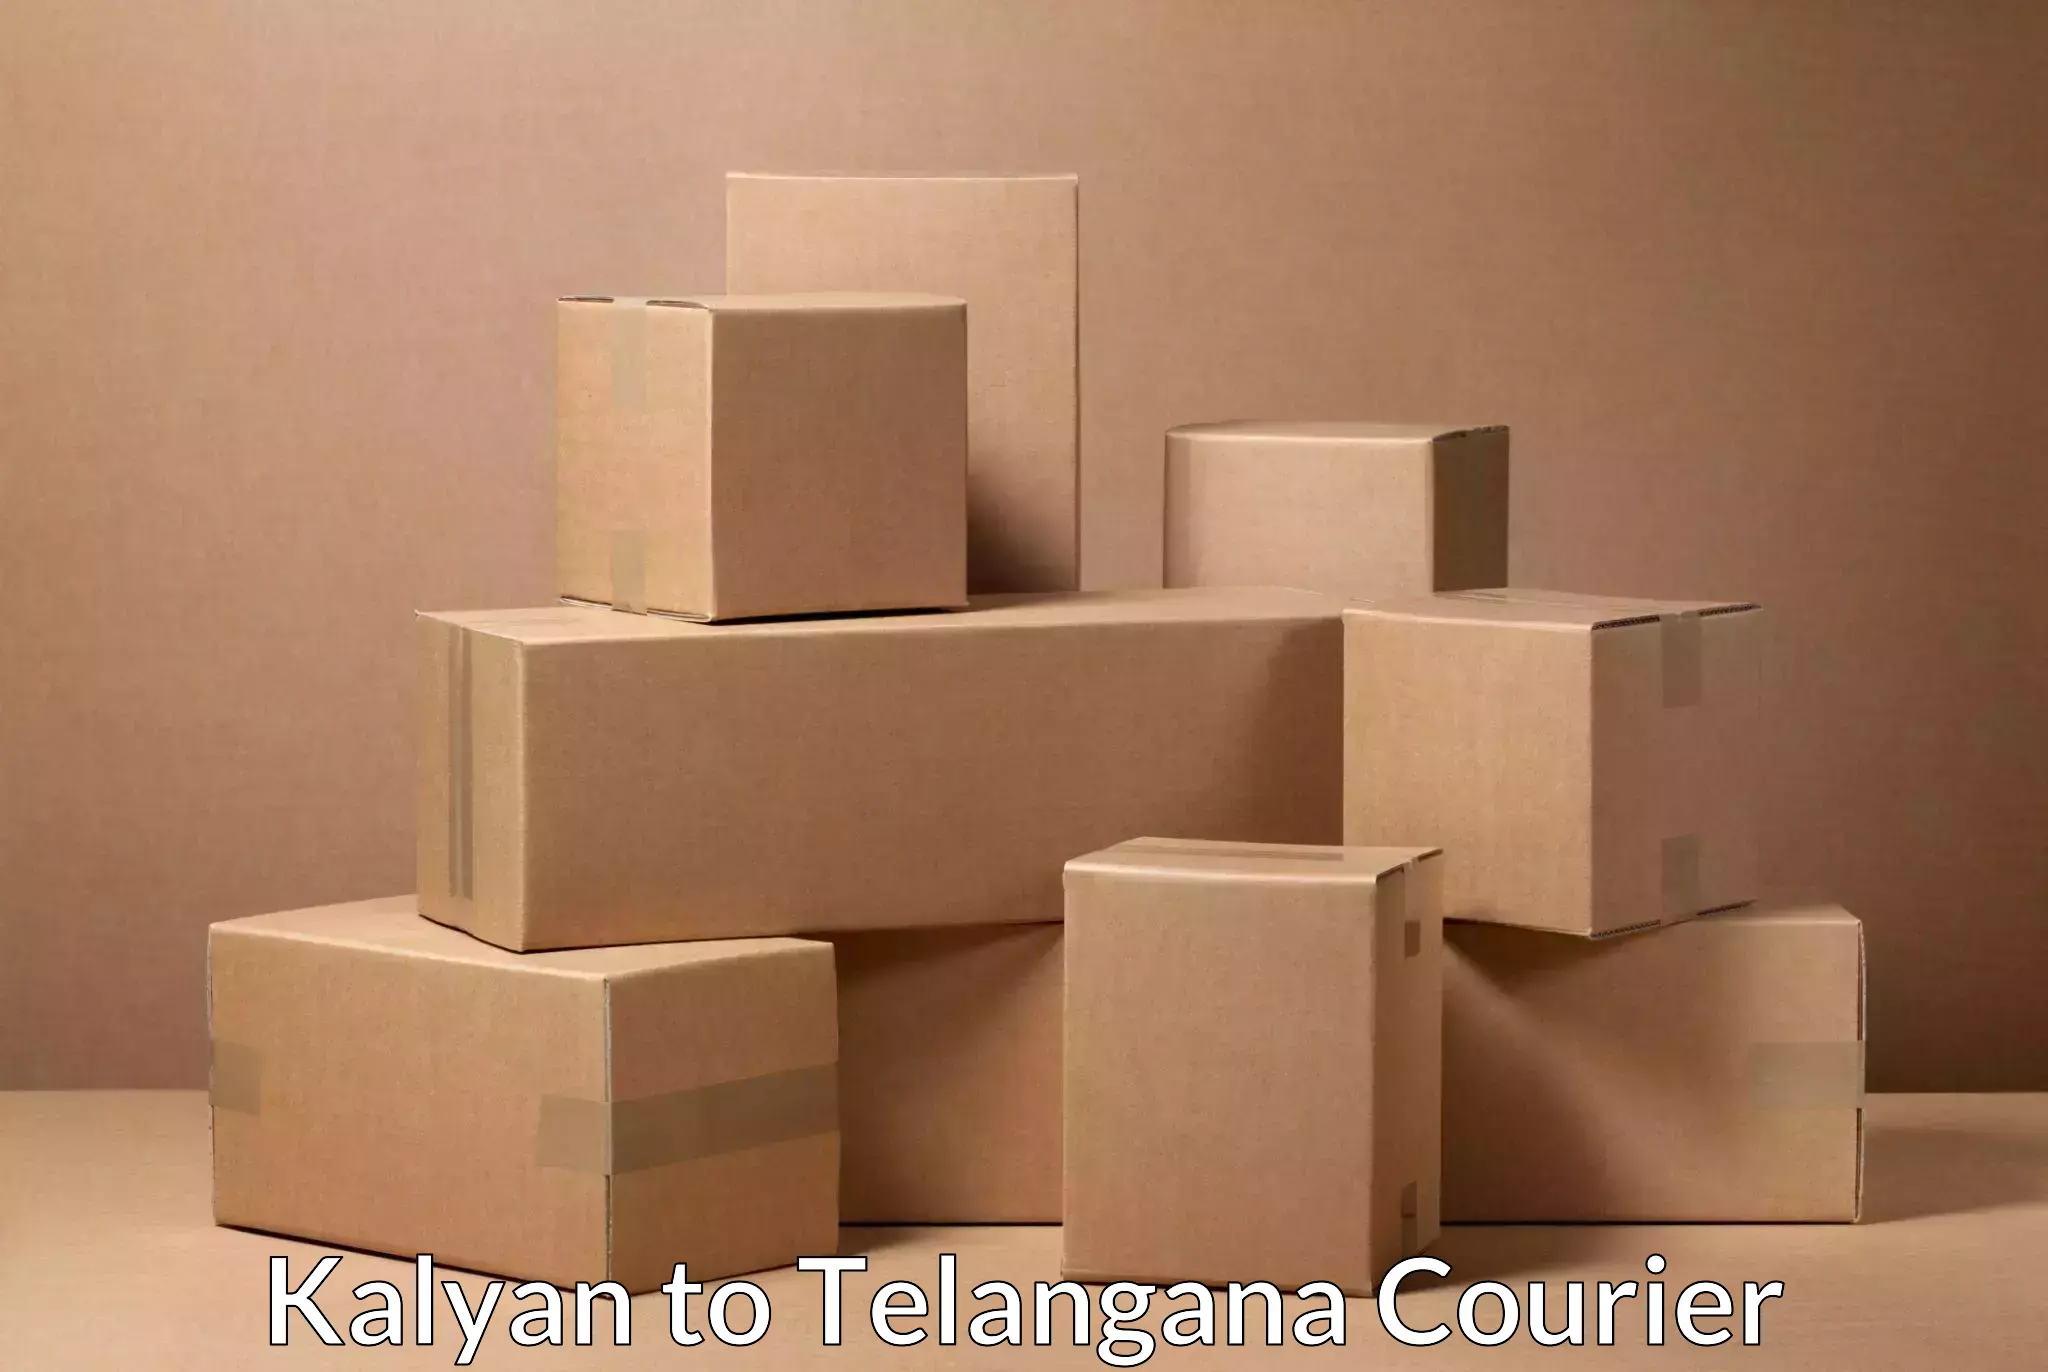 Pharmaceutical courier Kalyan to Telangana